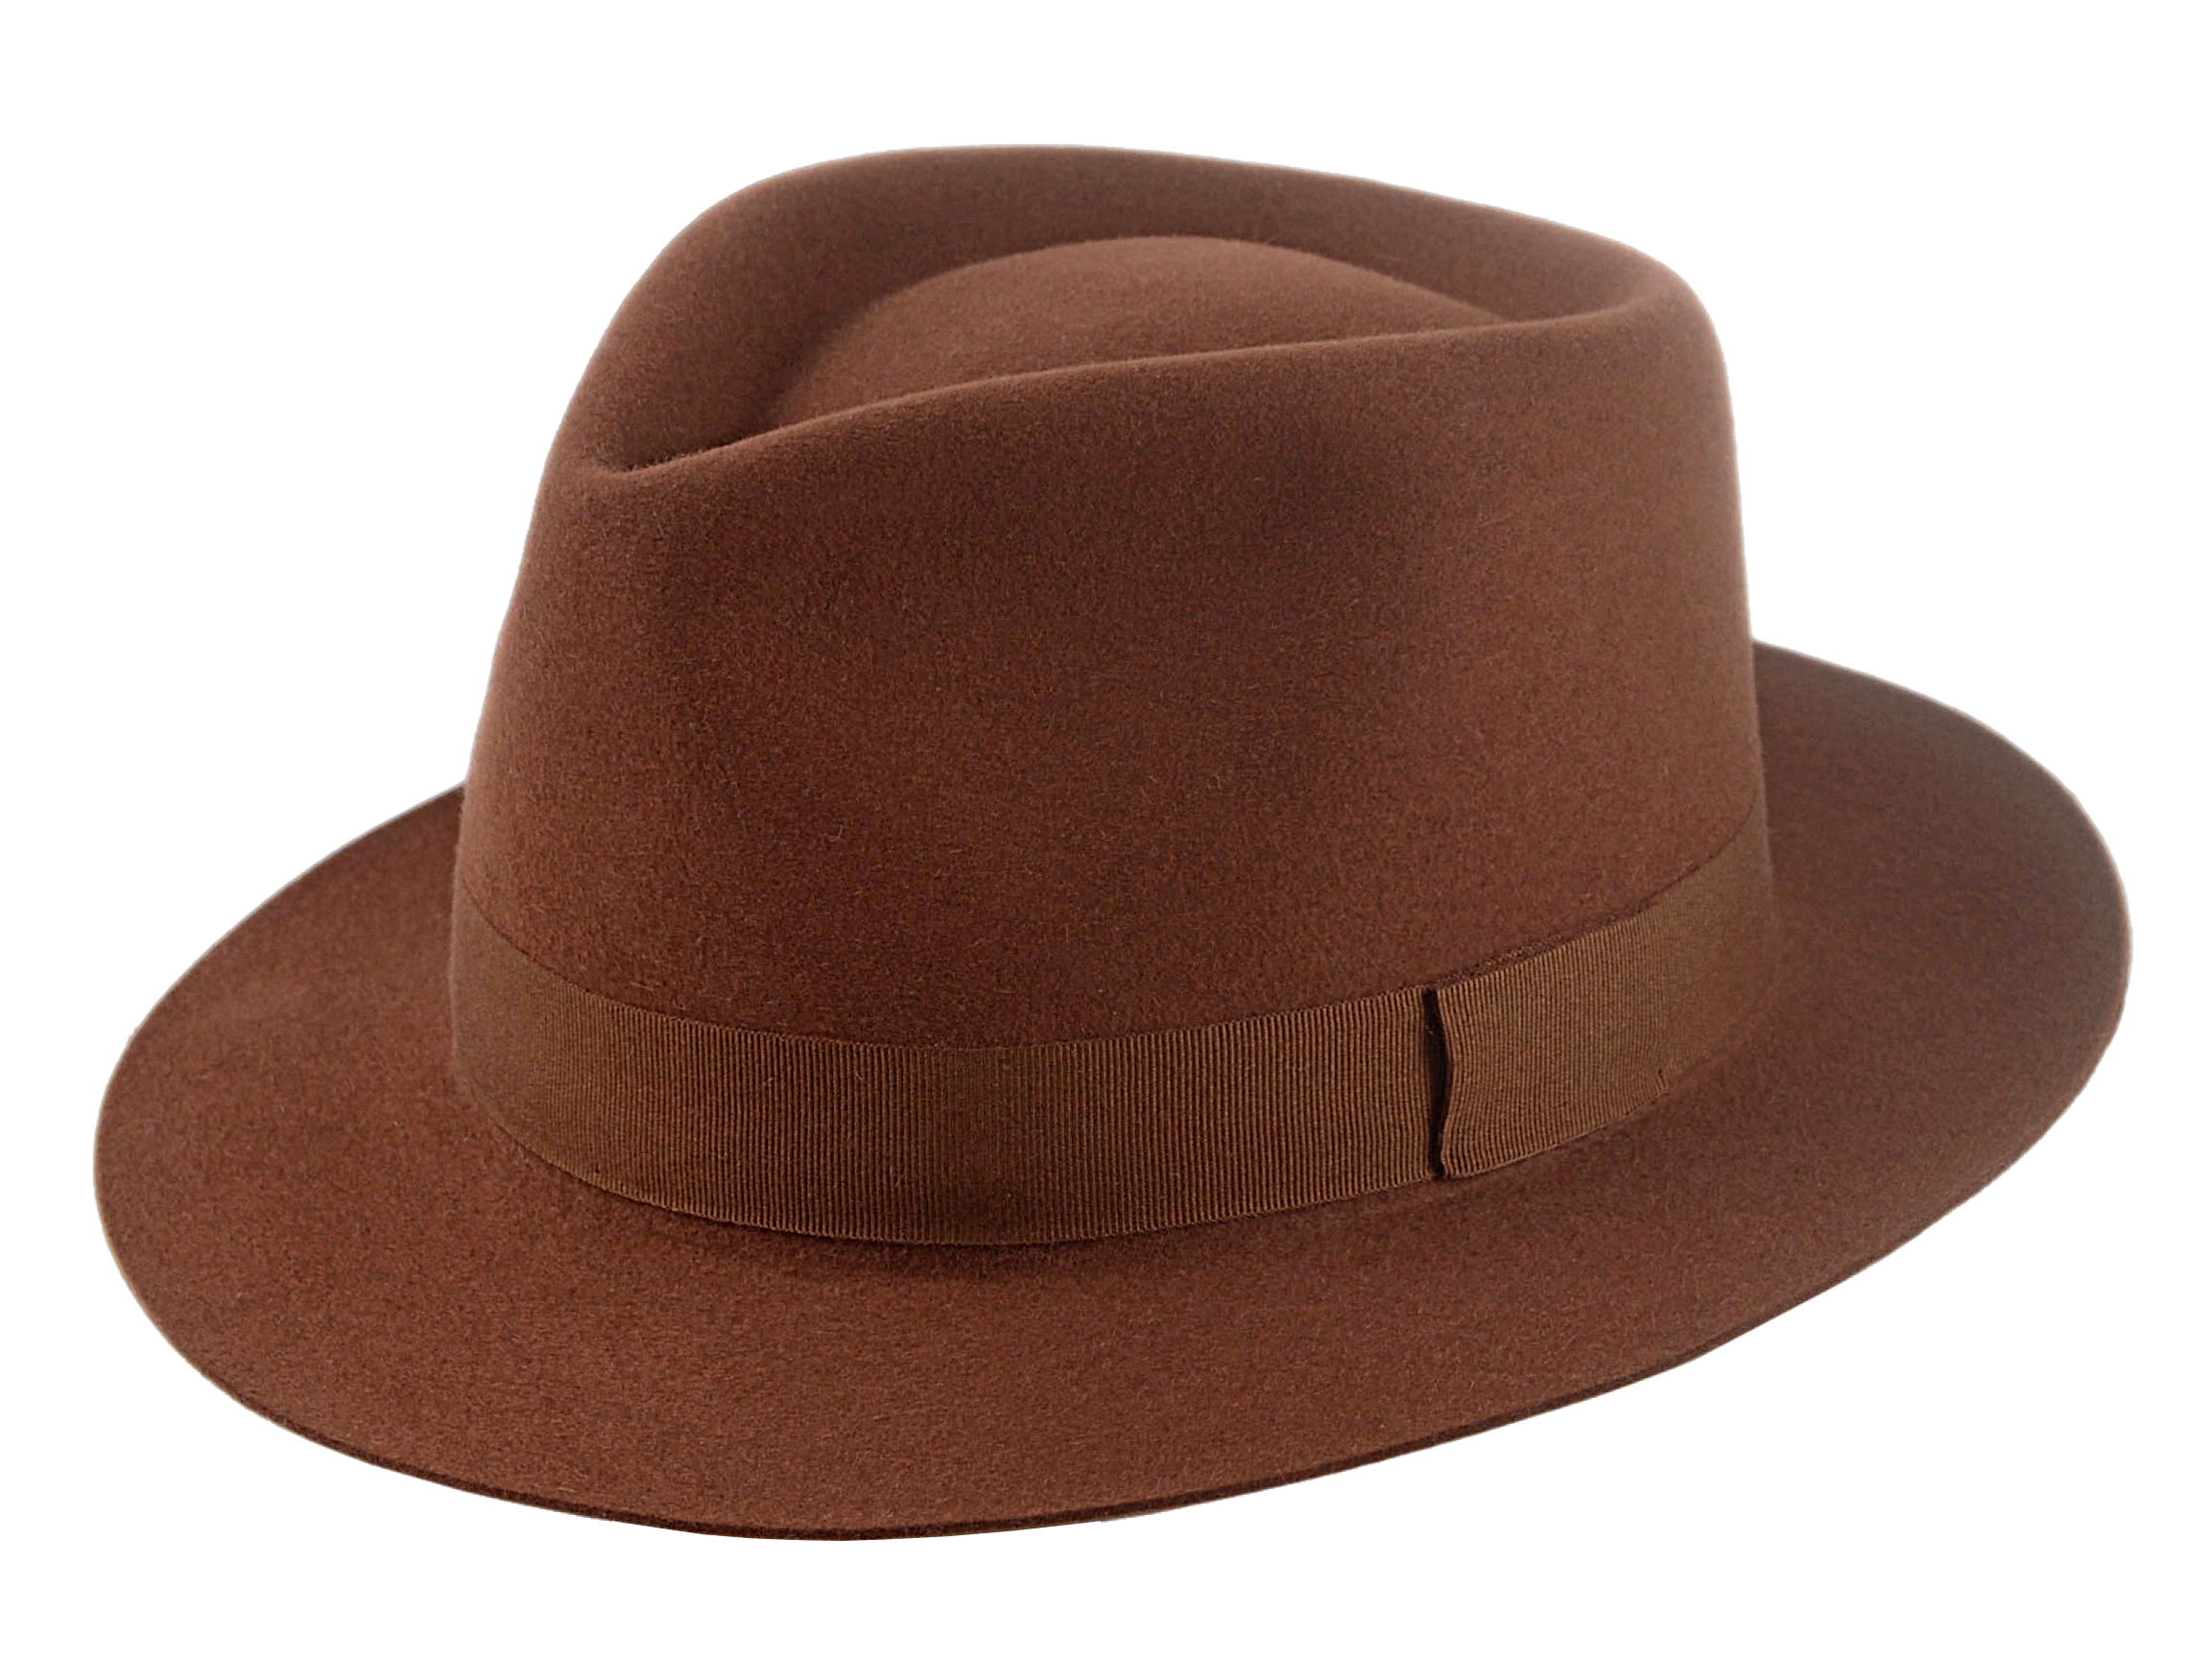 The Hermes: Fedora Hat For Men in Beaver Fur Felt